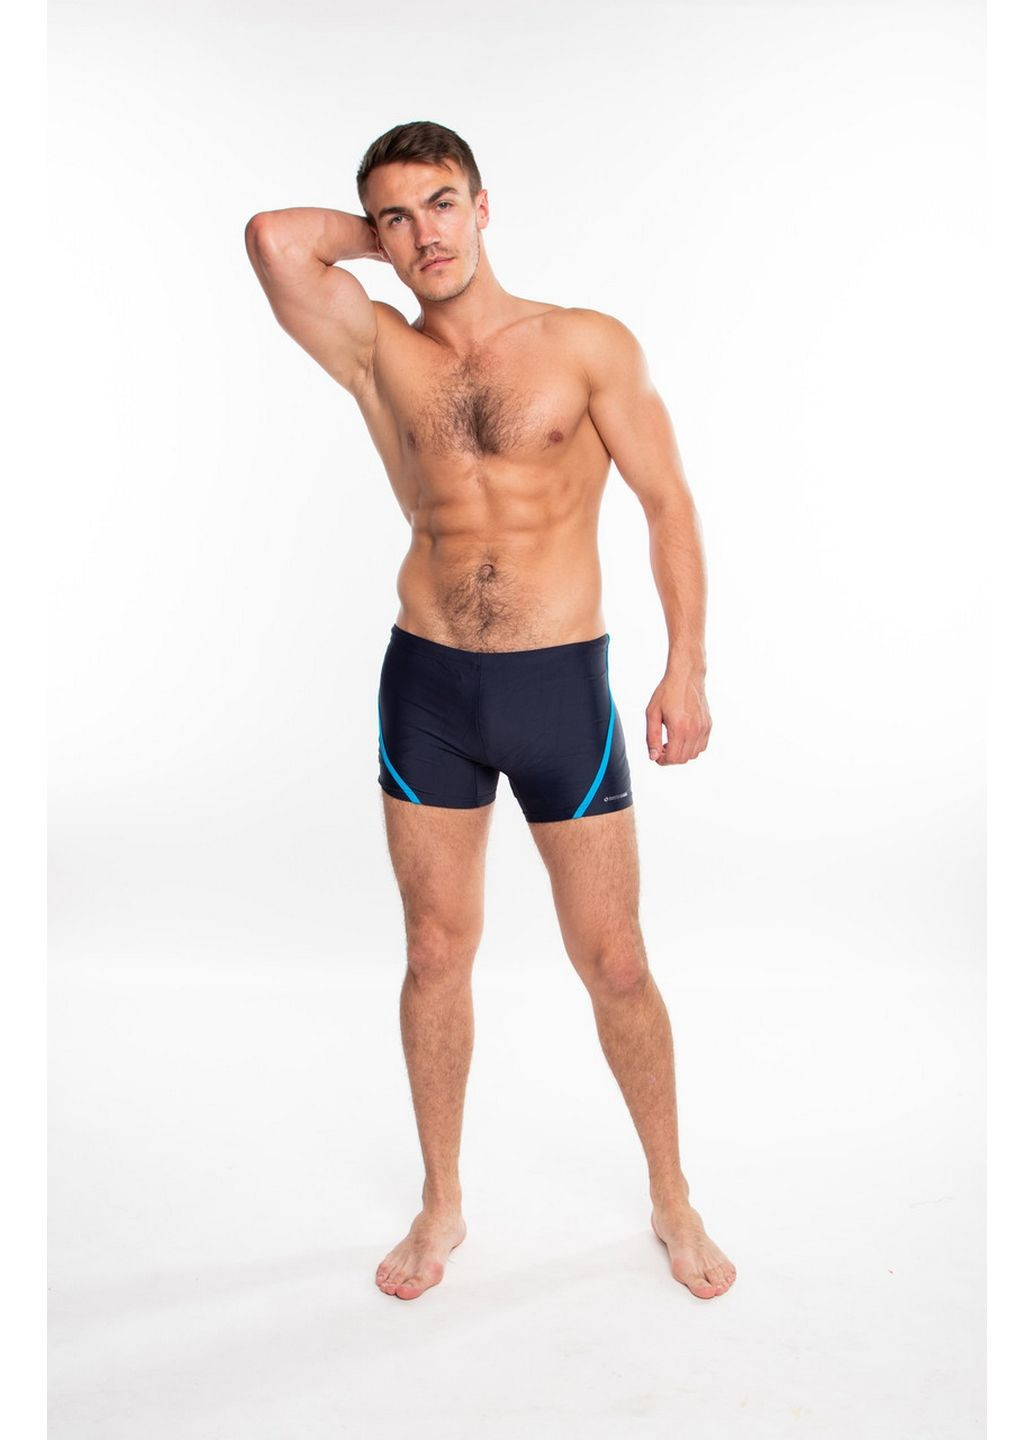 Мужские темно-синие спортивные мужские плавки боксеры Sesto Senso